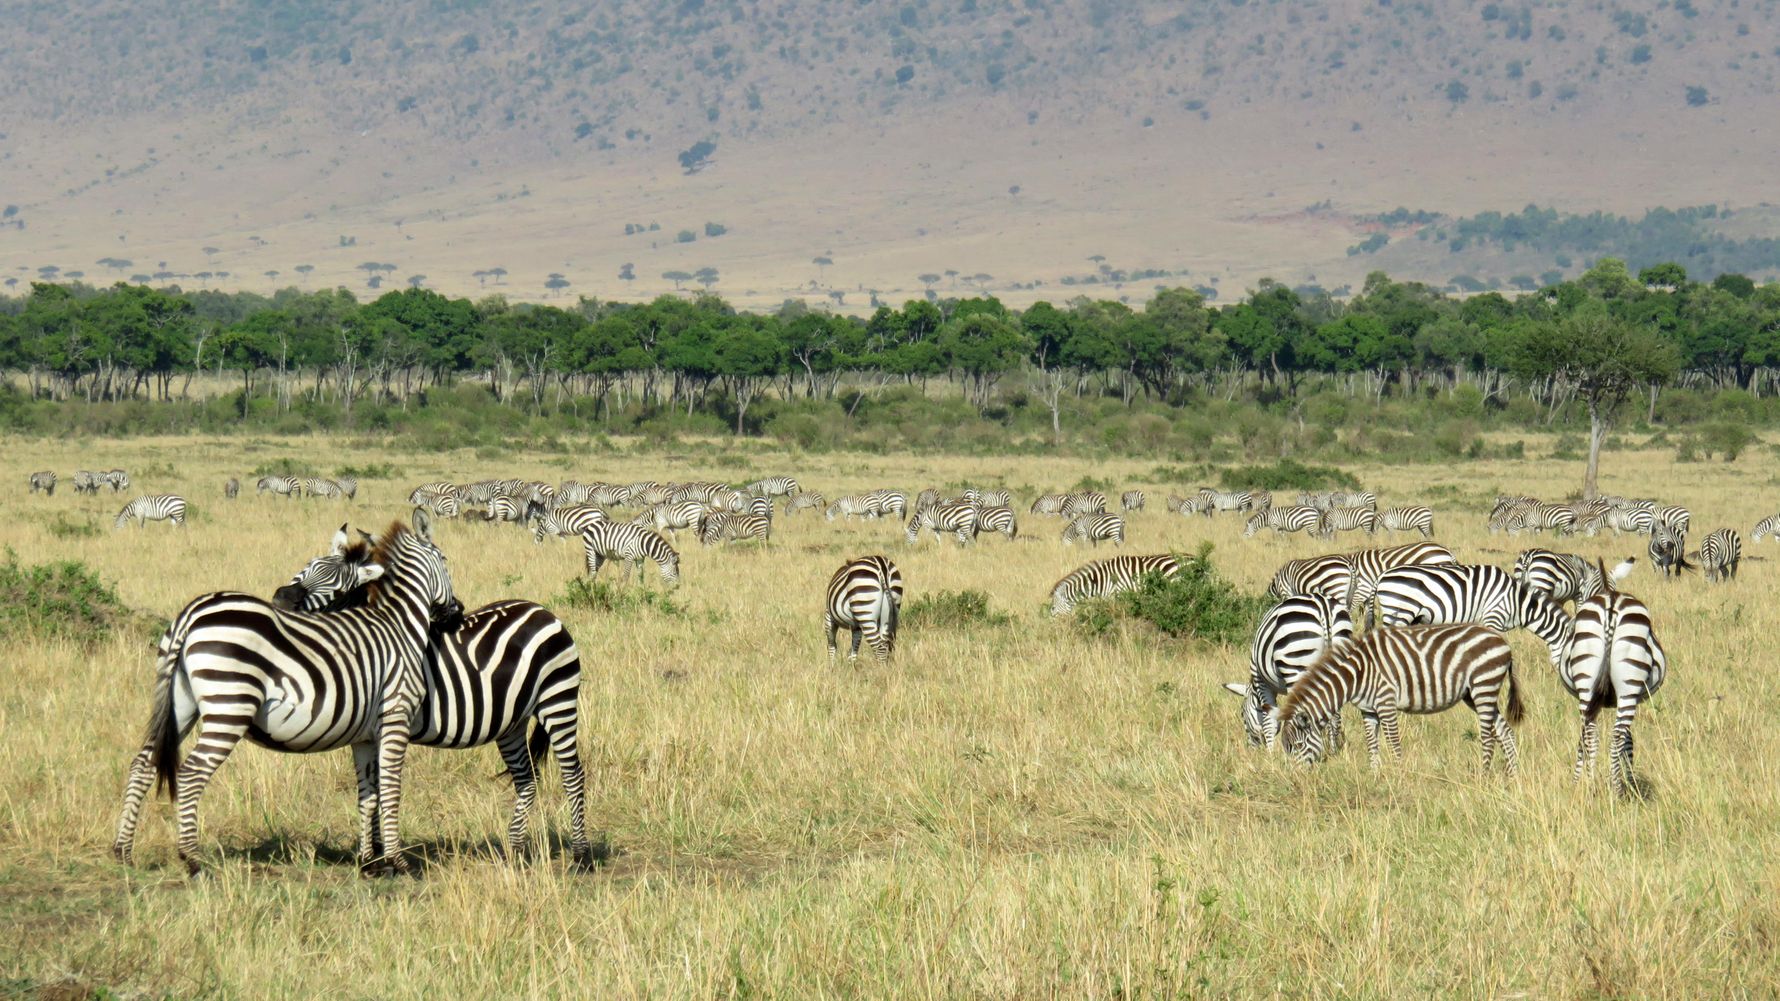 Safari-Reise in Kenia: eine grosse Herde Zebras beim Grasen in der Savanne Ostafrikas